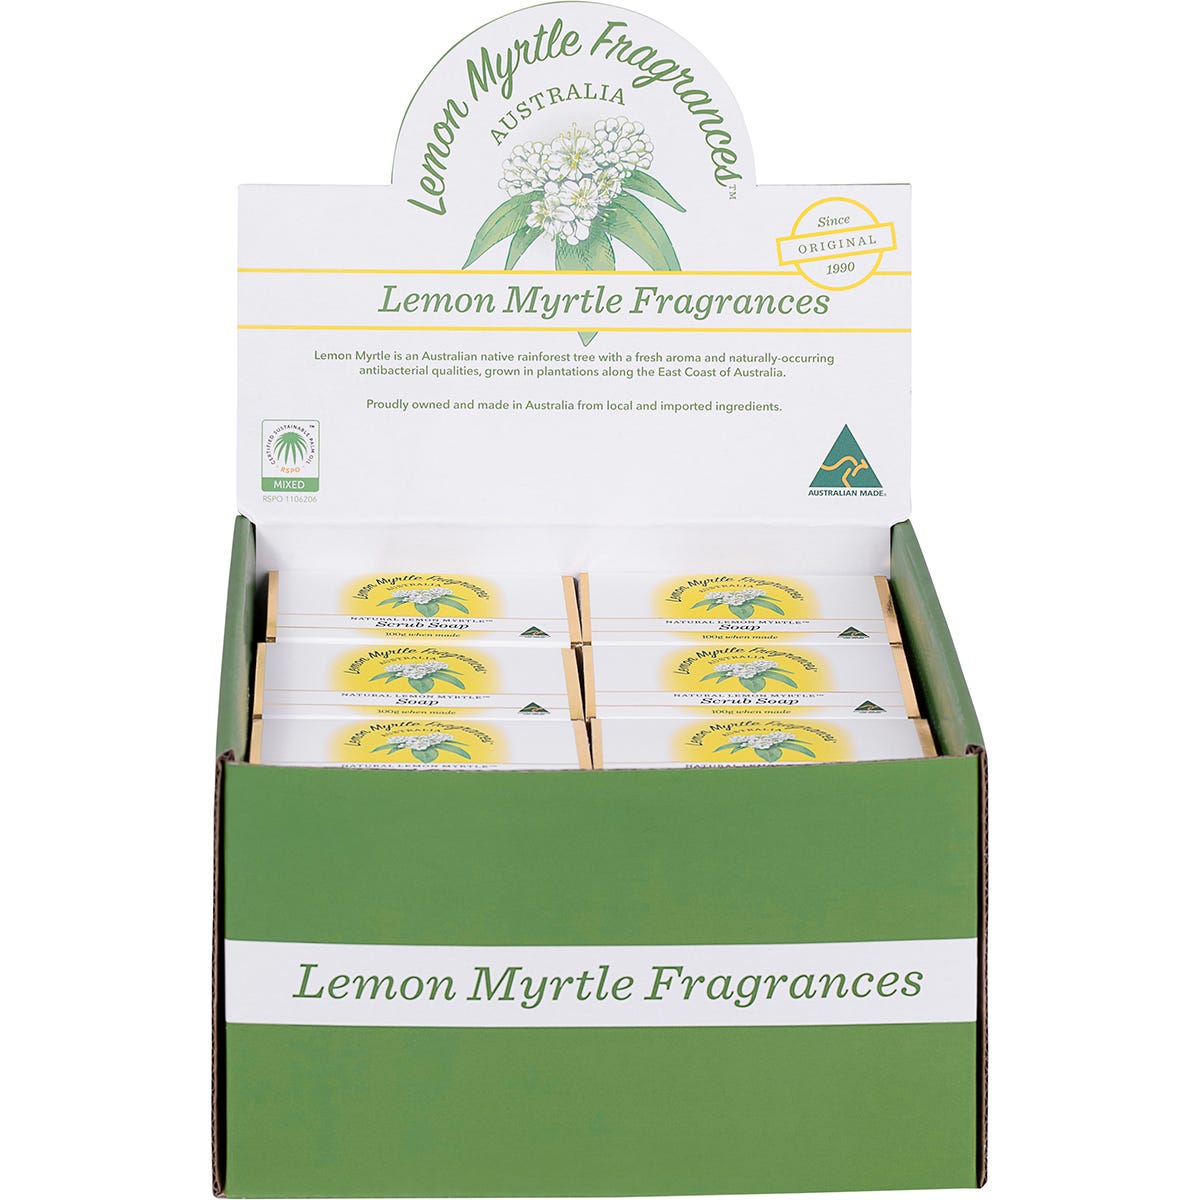 Lemon Myrtle Fragrances Soap Mixed Plain & Exfoliant 100g - Dr Earth - Bath & Body